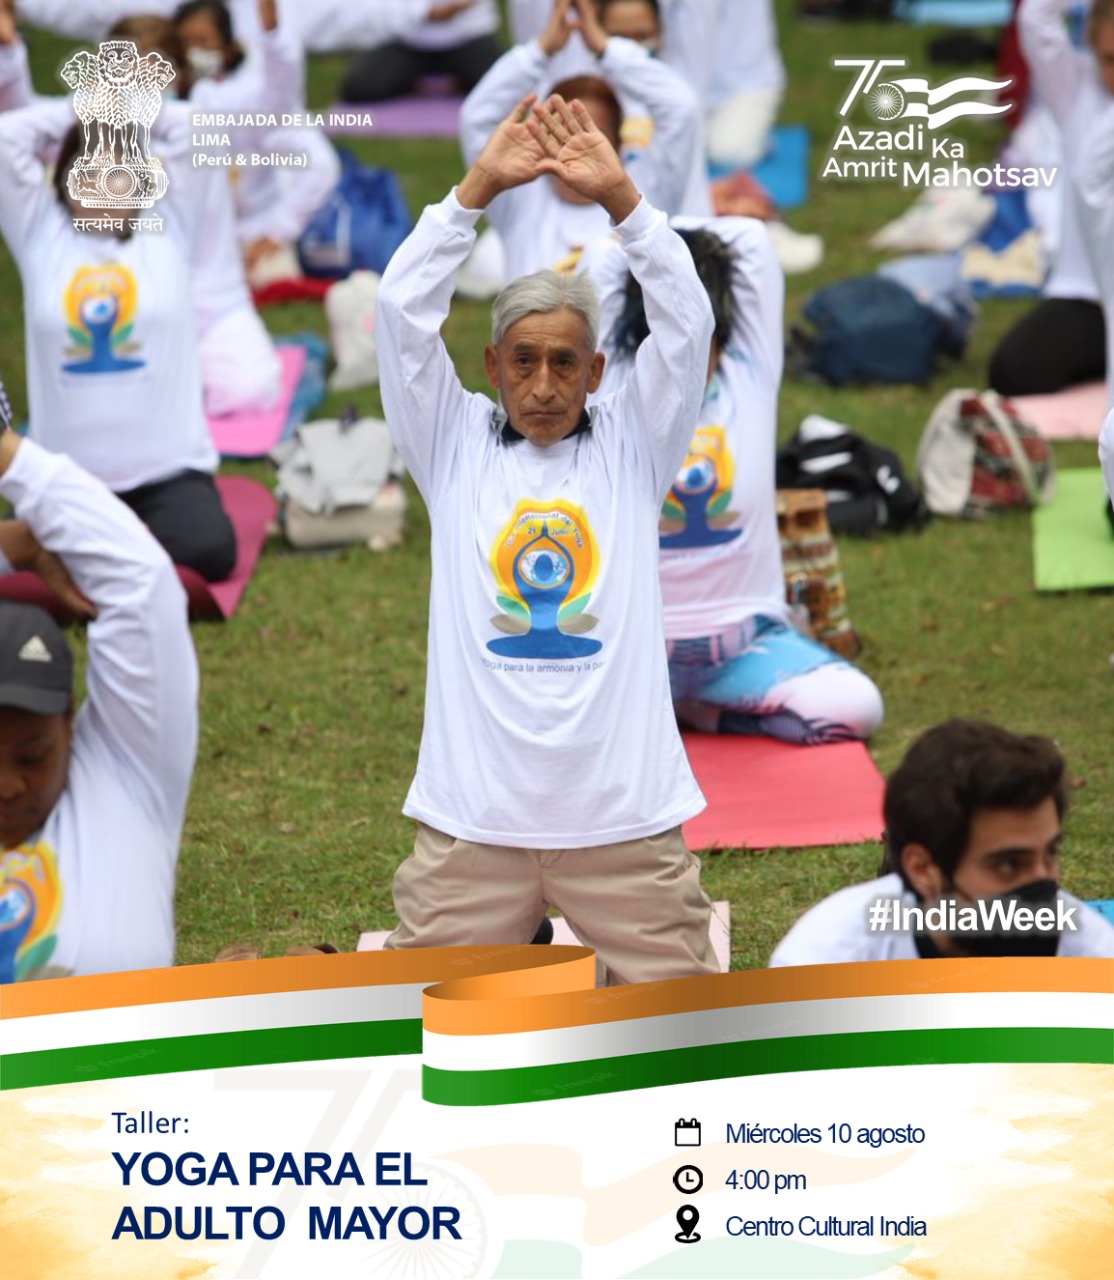 Workshop on Yoga for senior citizens as part of India Week under the aegis of Amrit Mahotsav